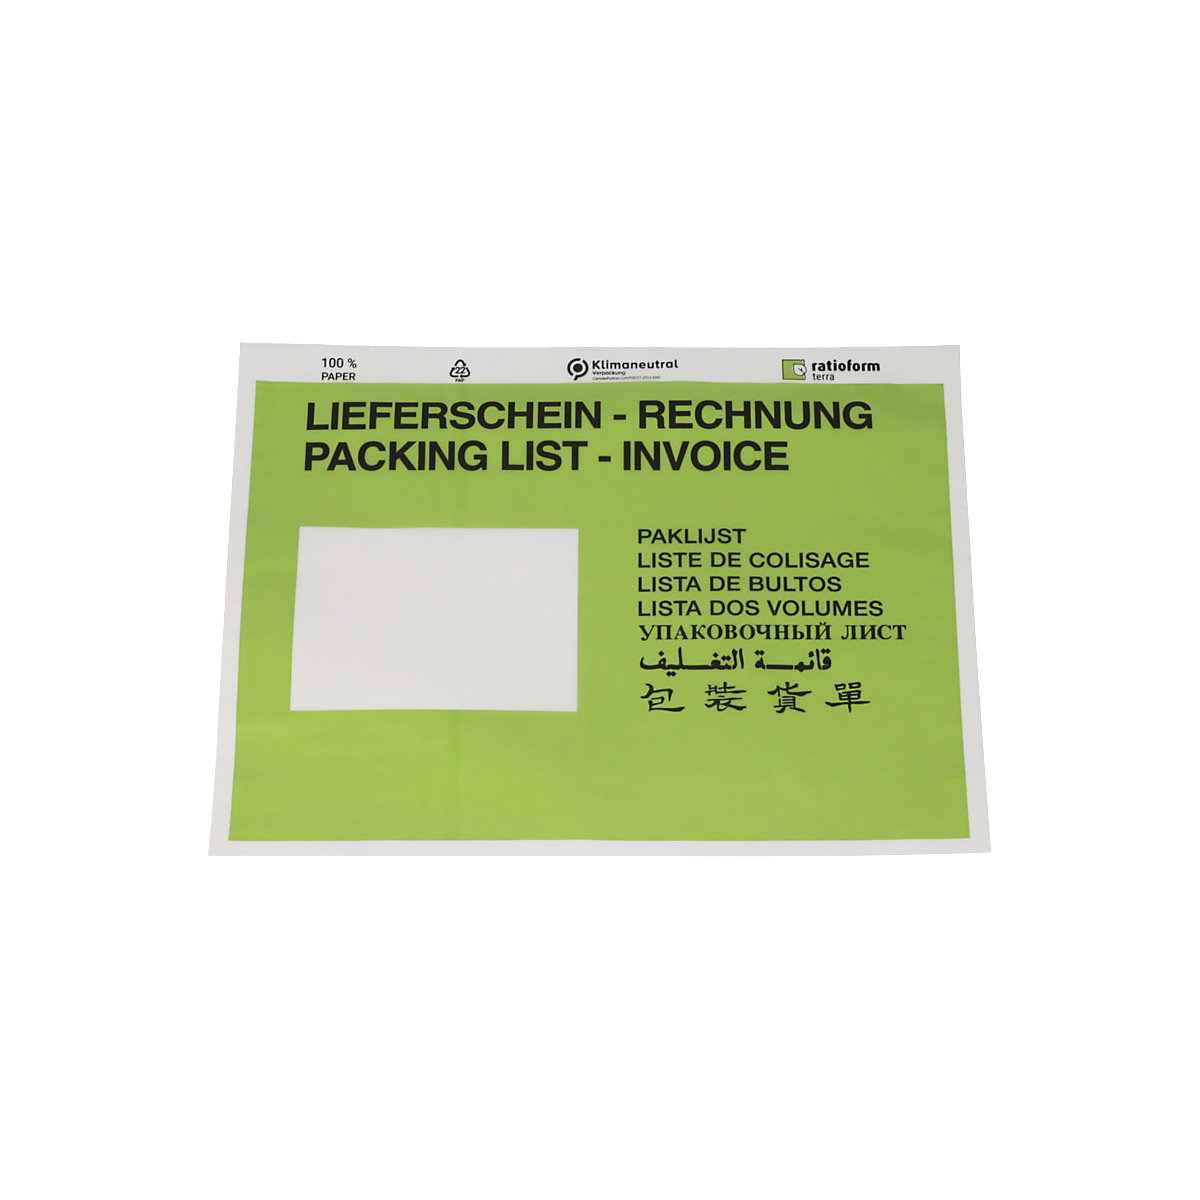 Dokumententaschen aus Papier terra, Aufdruck Lieferschein – Rechnung, VE 1000 Stk, LxB 240 x 175 mm, grün, ab 5 VE-1